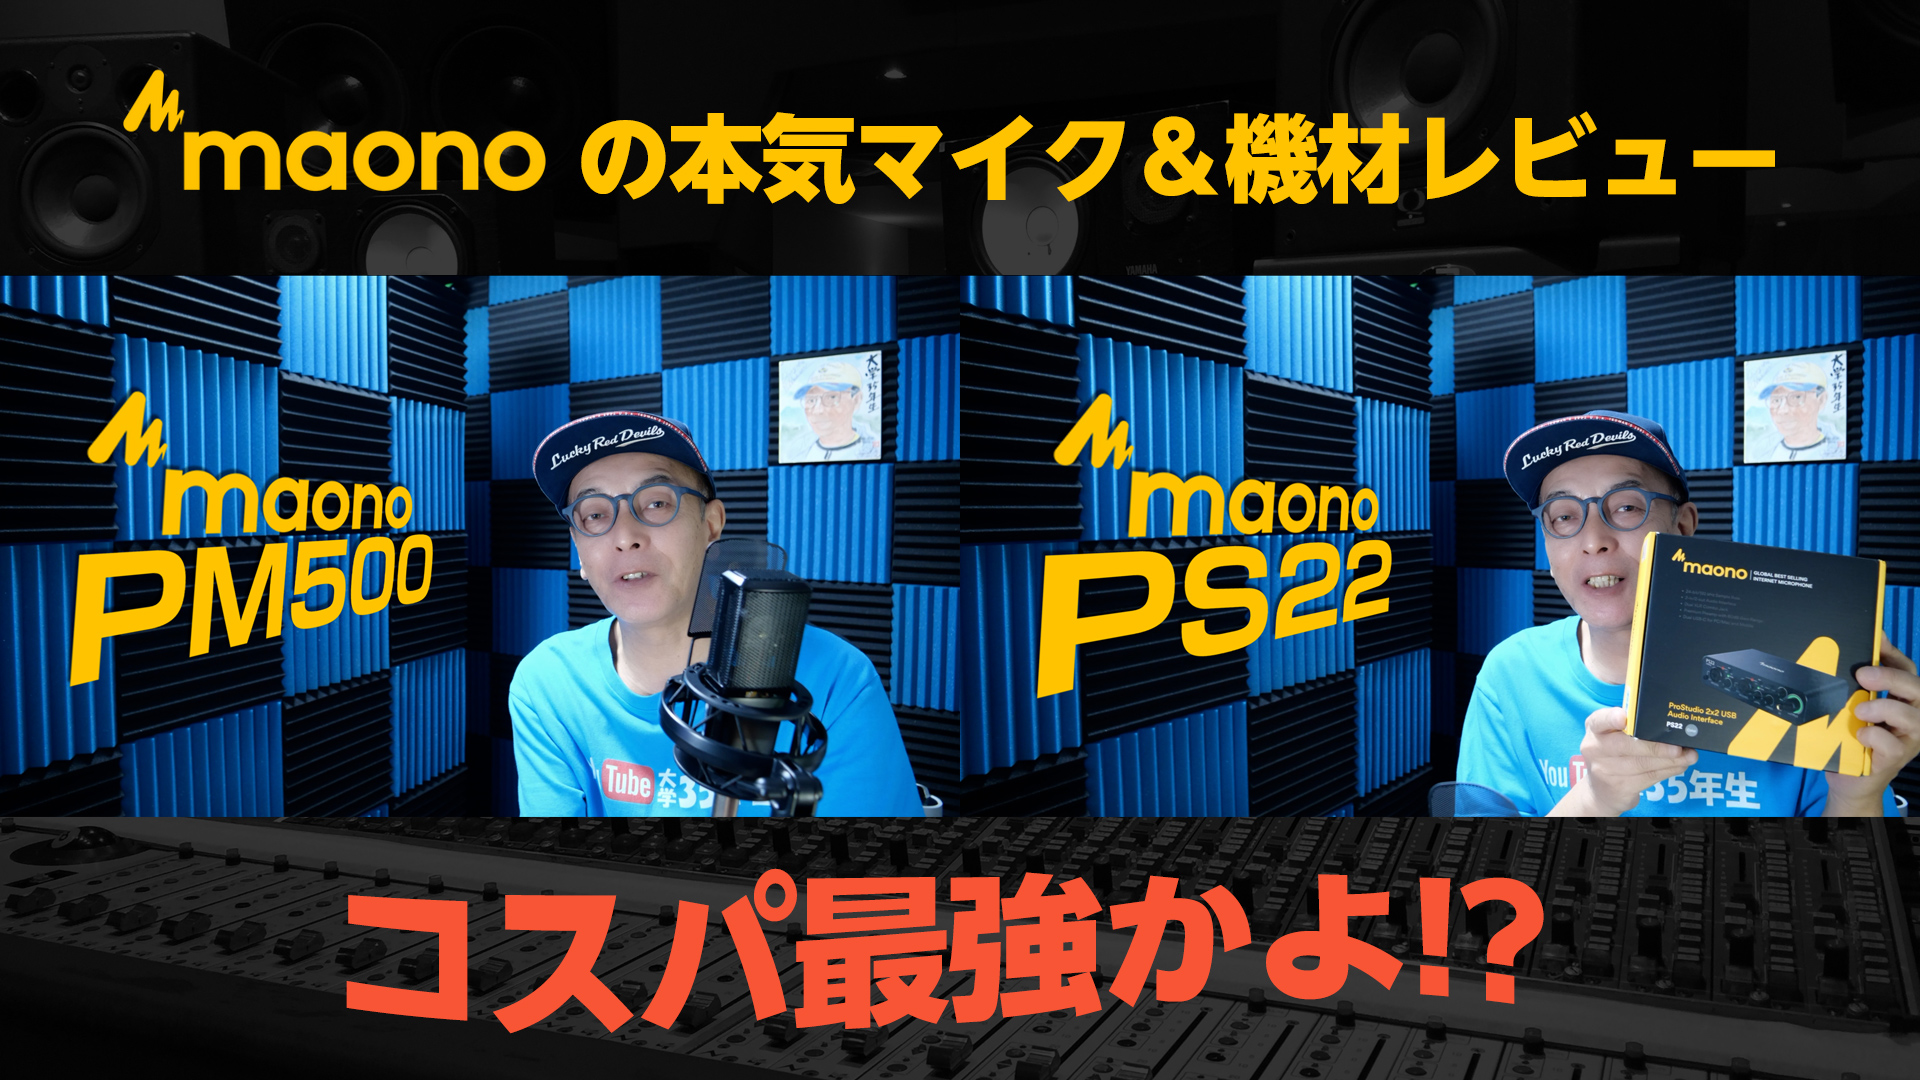 maono PM500/PS22レビュー - コスパ最強ラージダイヤフラムコンデンサーマイク、USBオーディオインターフェース